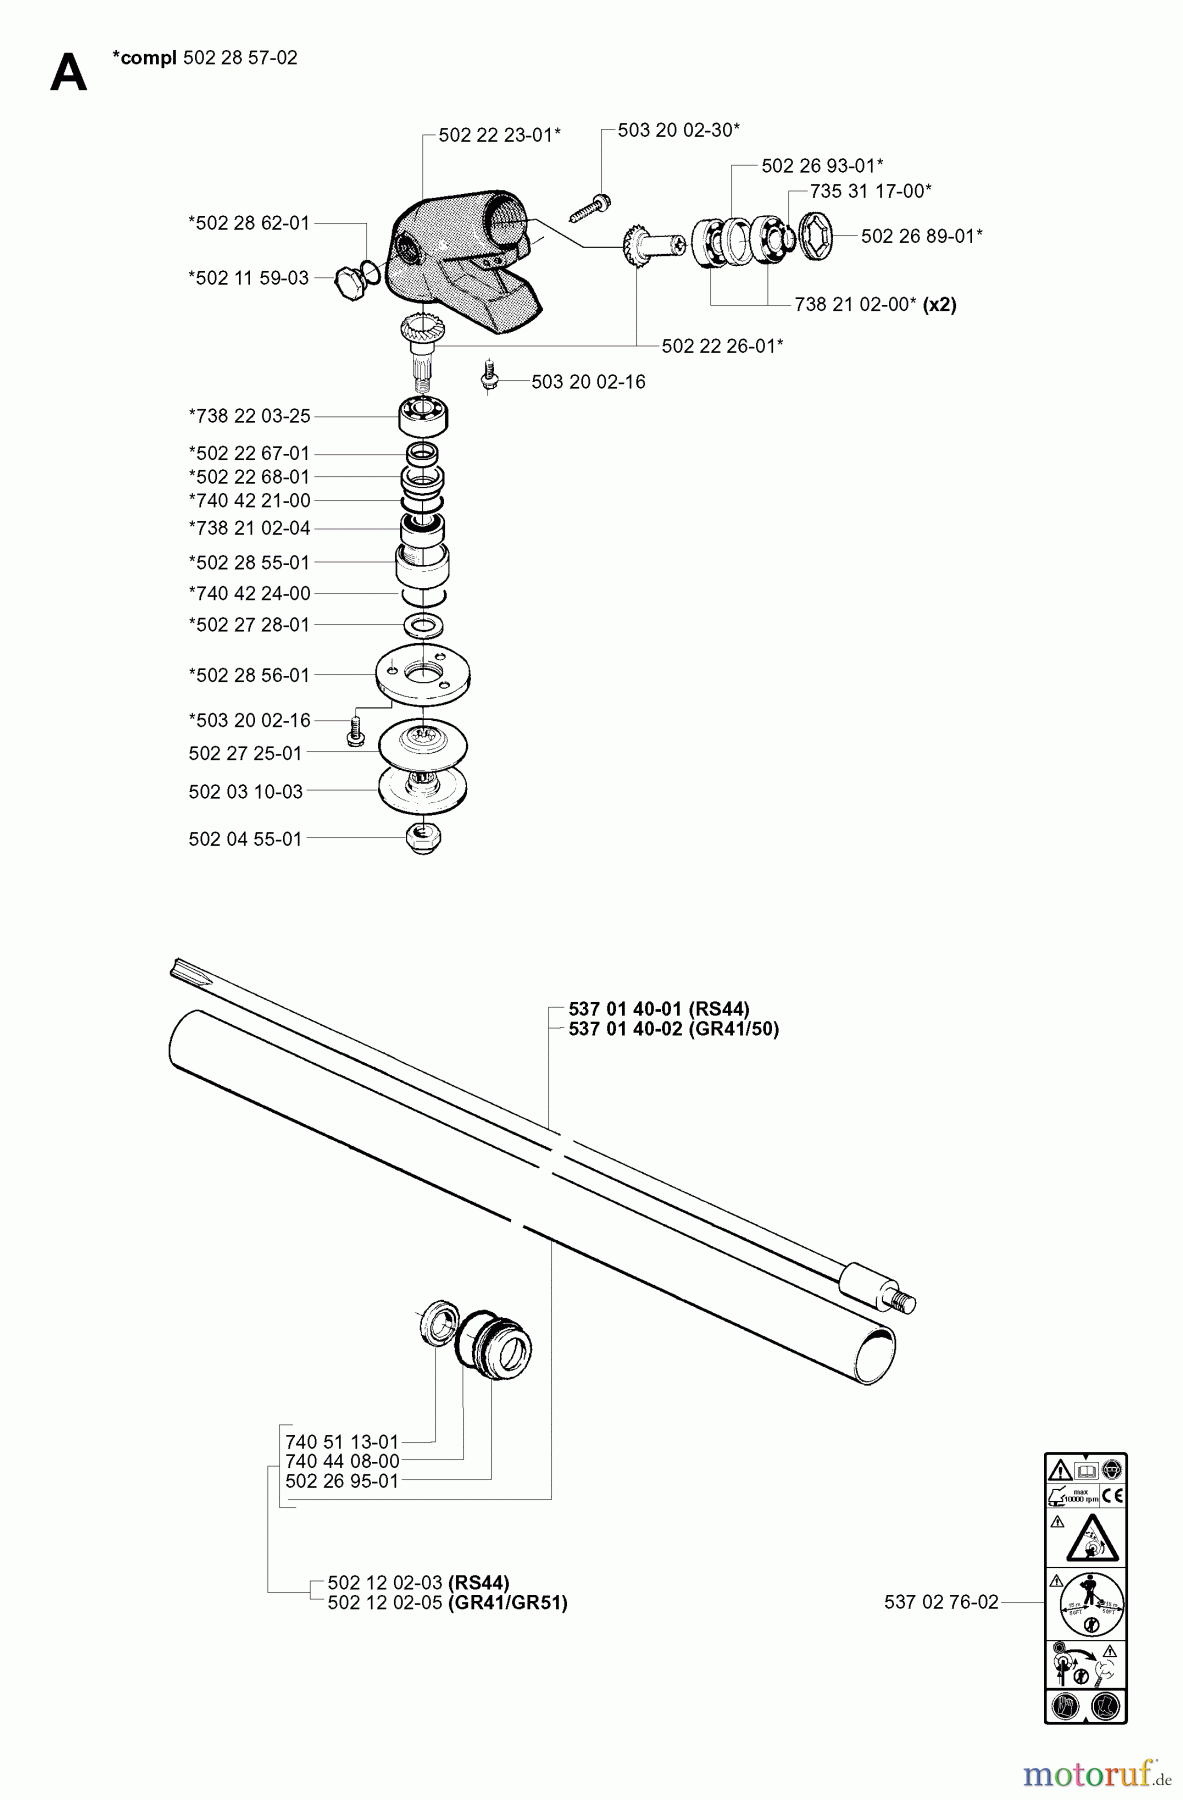  Jonsered Motorsensen, Trimmer GR50 EPA - Jonsered String/Brush Trimmer (2001-03) BEVEL GEAR SHAFT